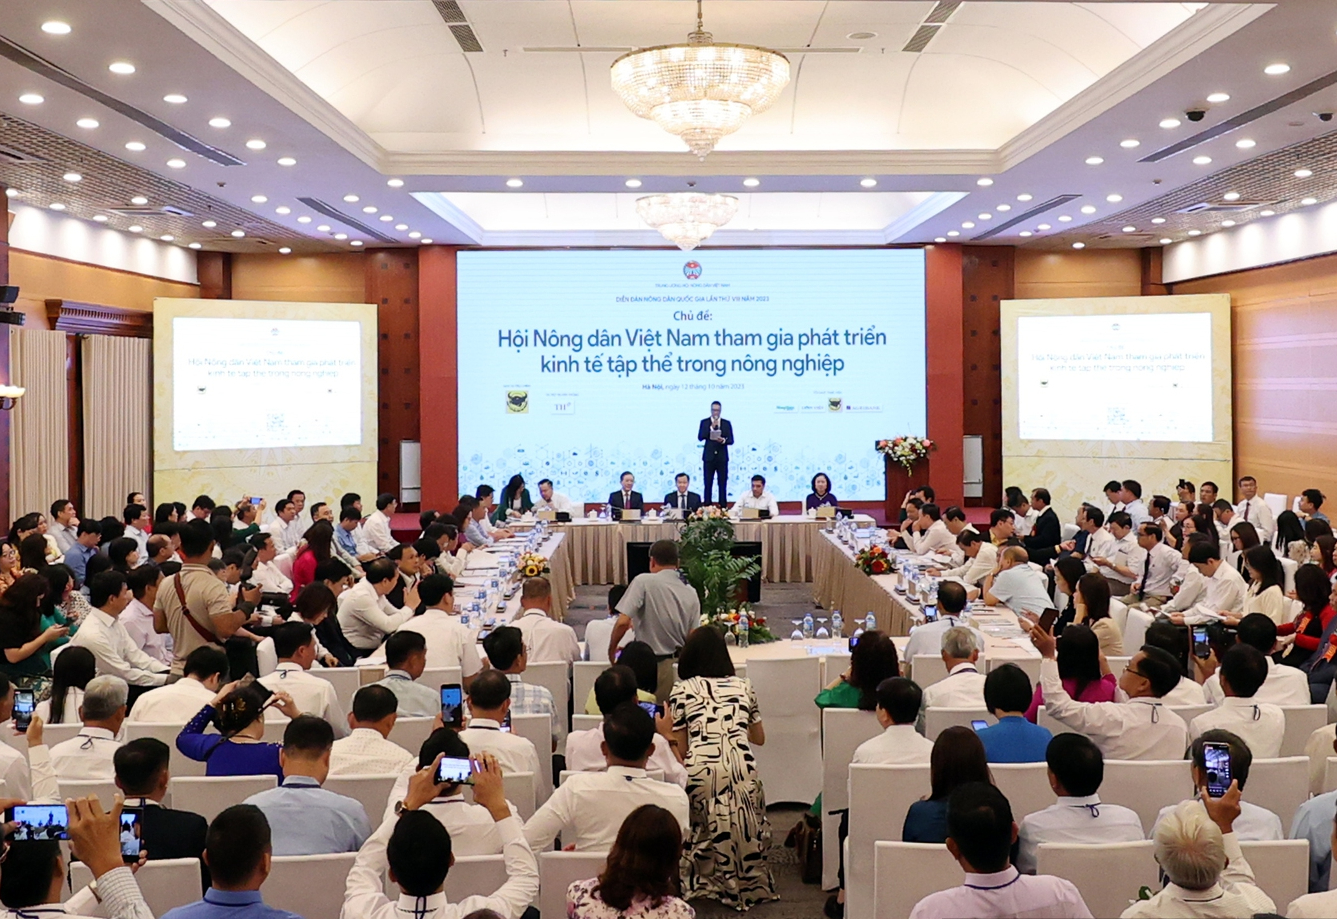 Diễn đàn nông dân quốc gia lần thứ 8 được tổ chức với chủ đề 'Hội Nông dân Việt Nam tham gia phát triển kinh tế tập thể trong nông nghiệp'.